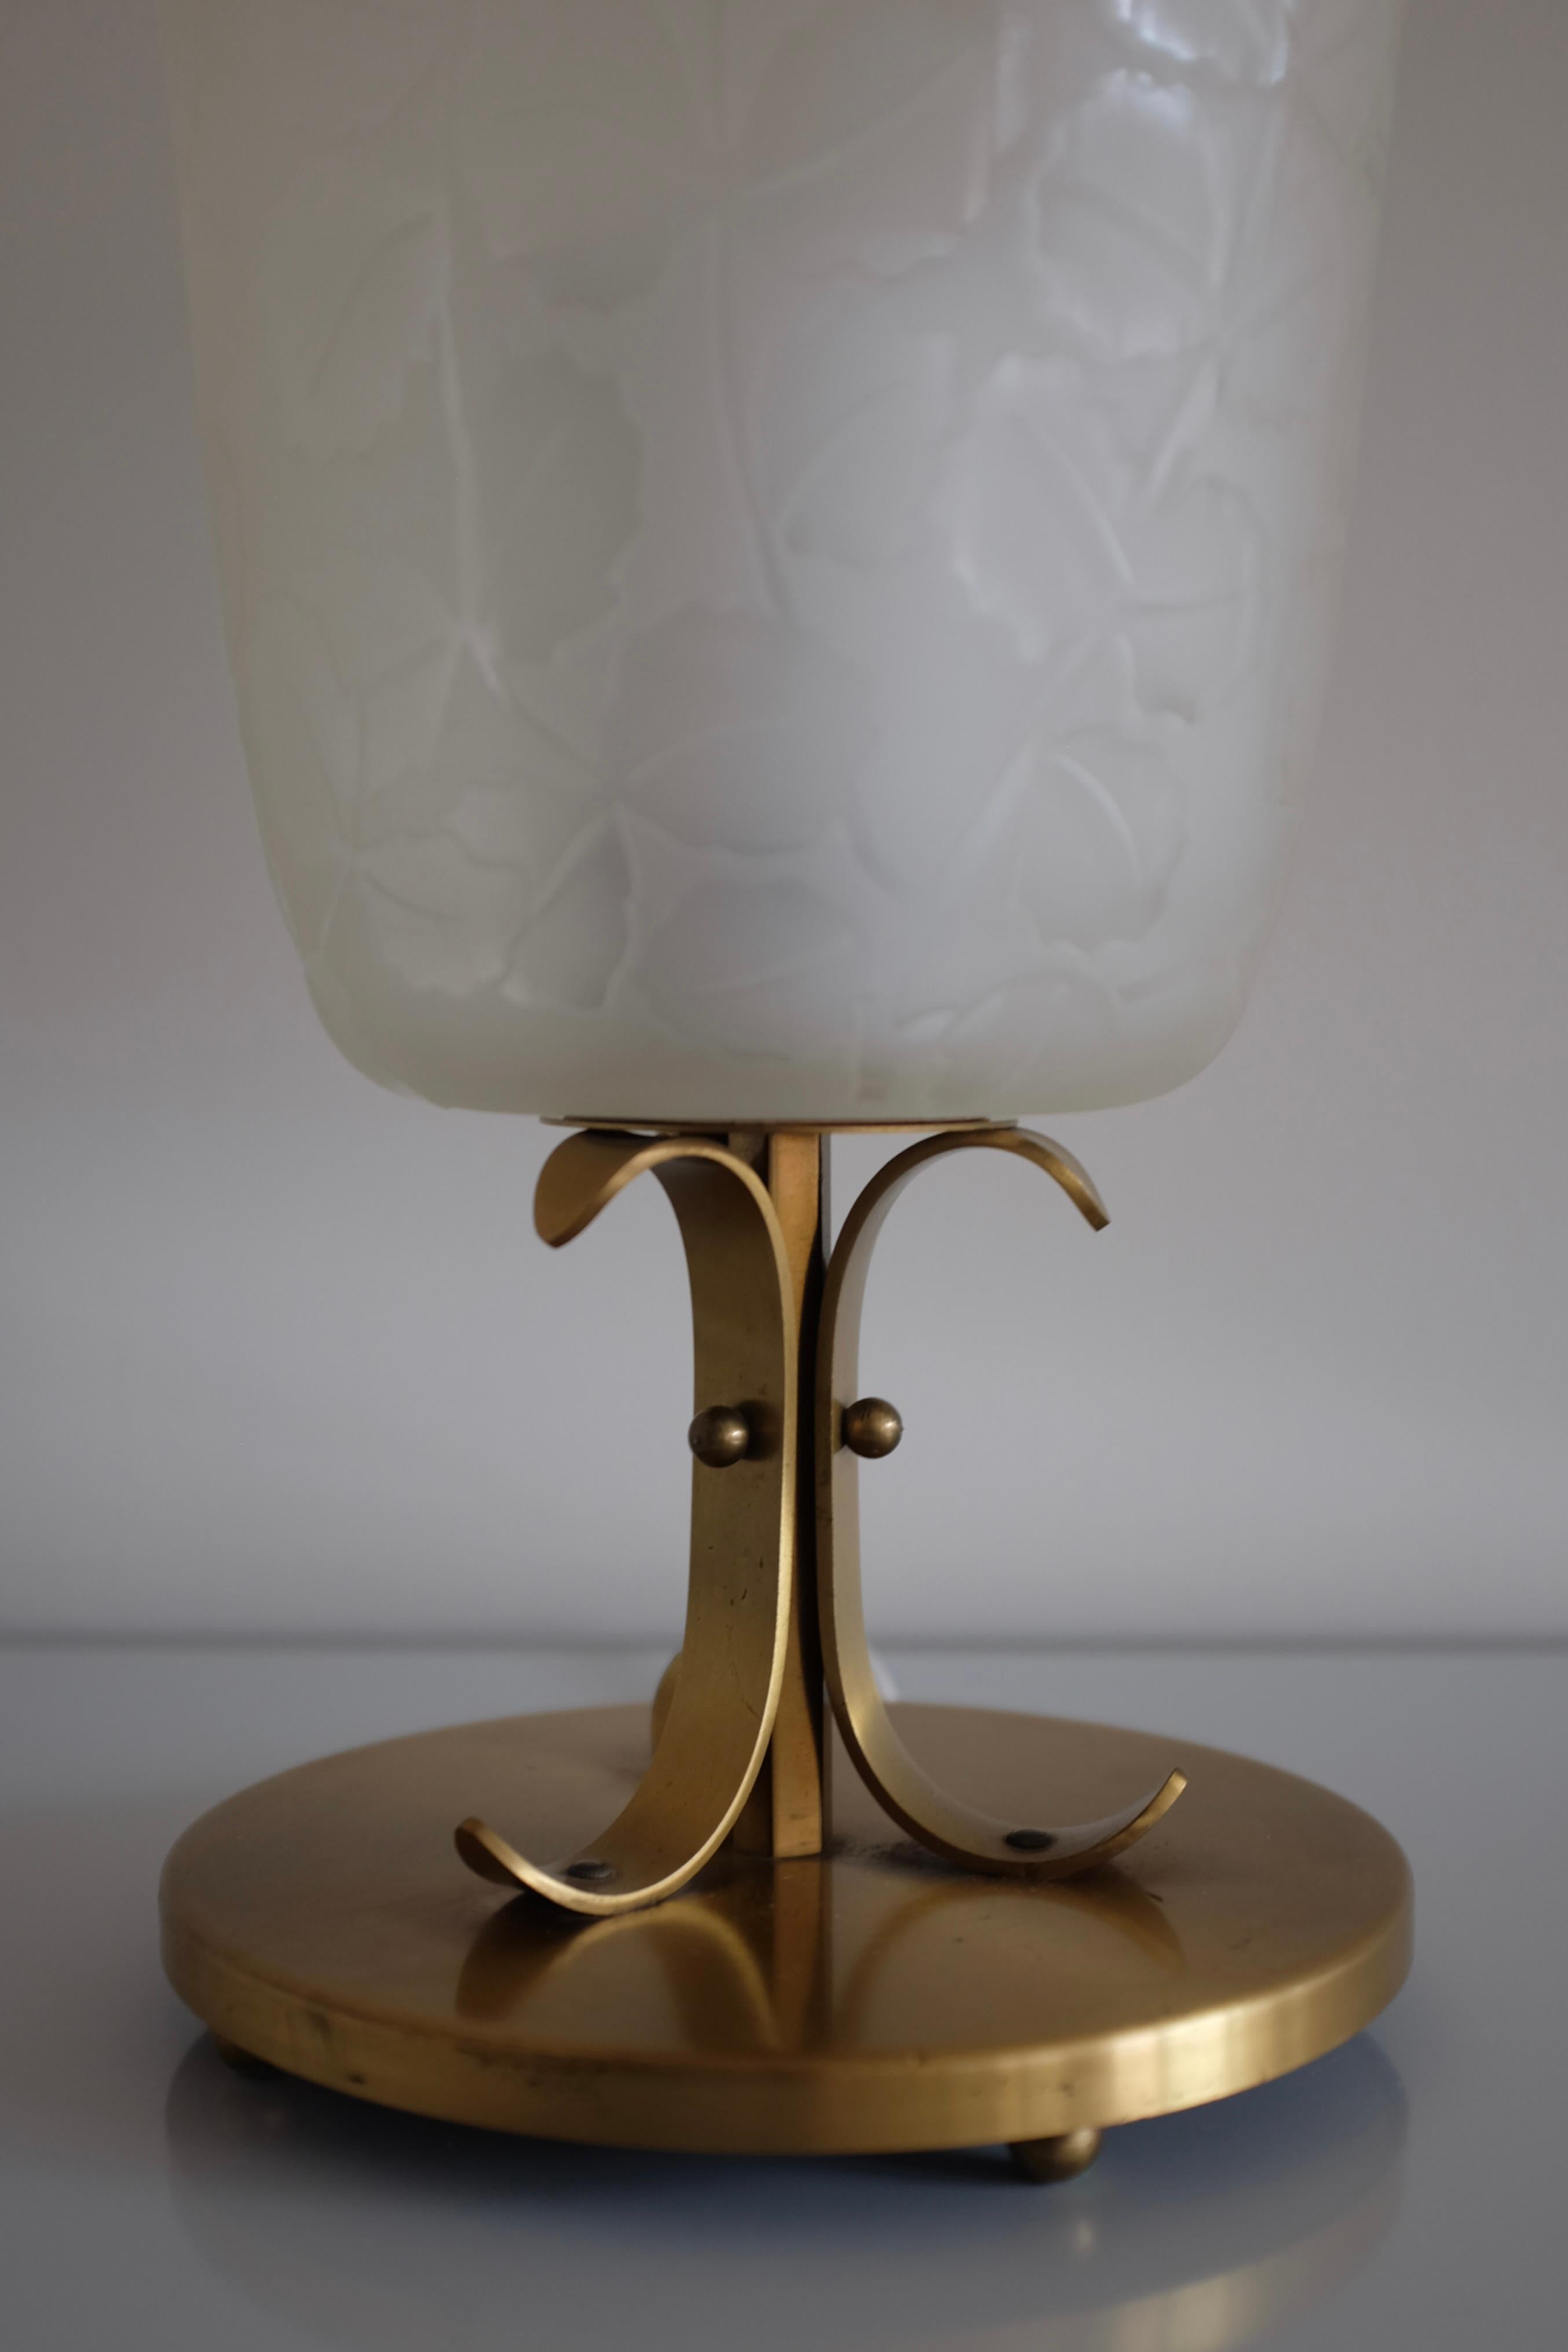 Rare lampe de table des années 1940 de Glössner & Co, Suède. De belles feuilles gravées recouvrent la lanterne en verre posée sur un pied de lampe en laiton avec des ornements décoratifs incurvés. Glössner & Co était un fabricant suédois de lampes